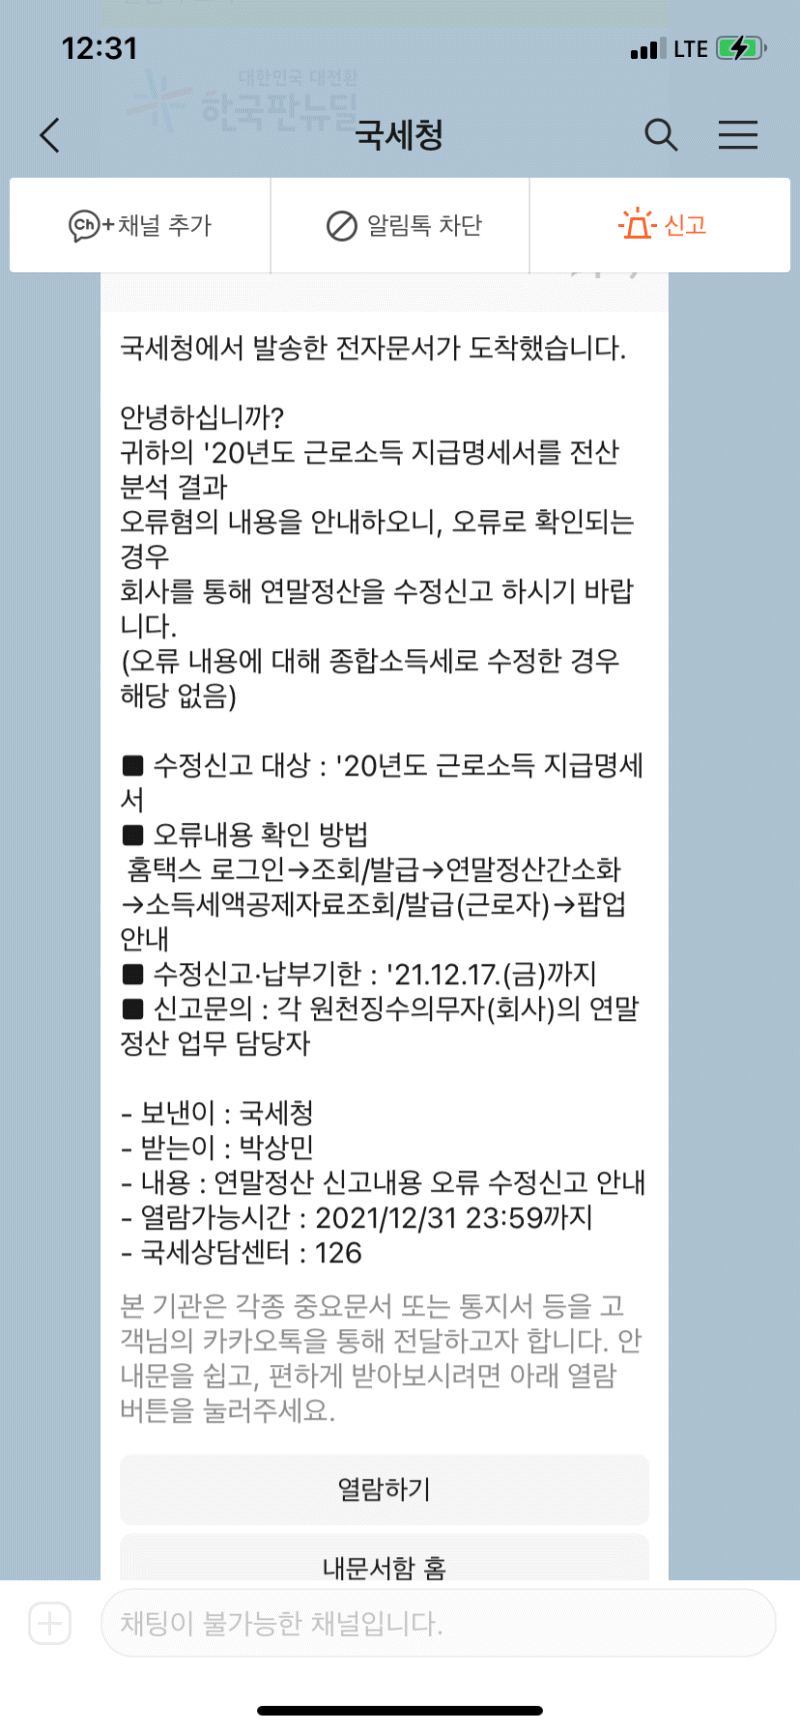 국세청-연말정산-오류혐의-수정신고-안내문자